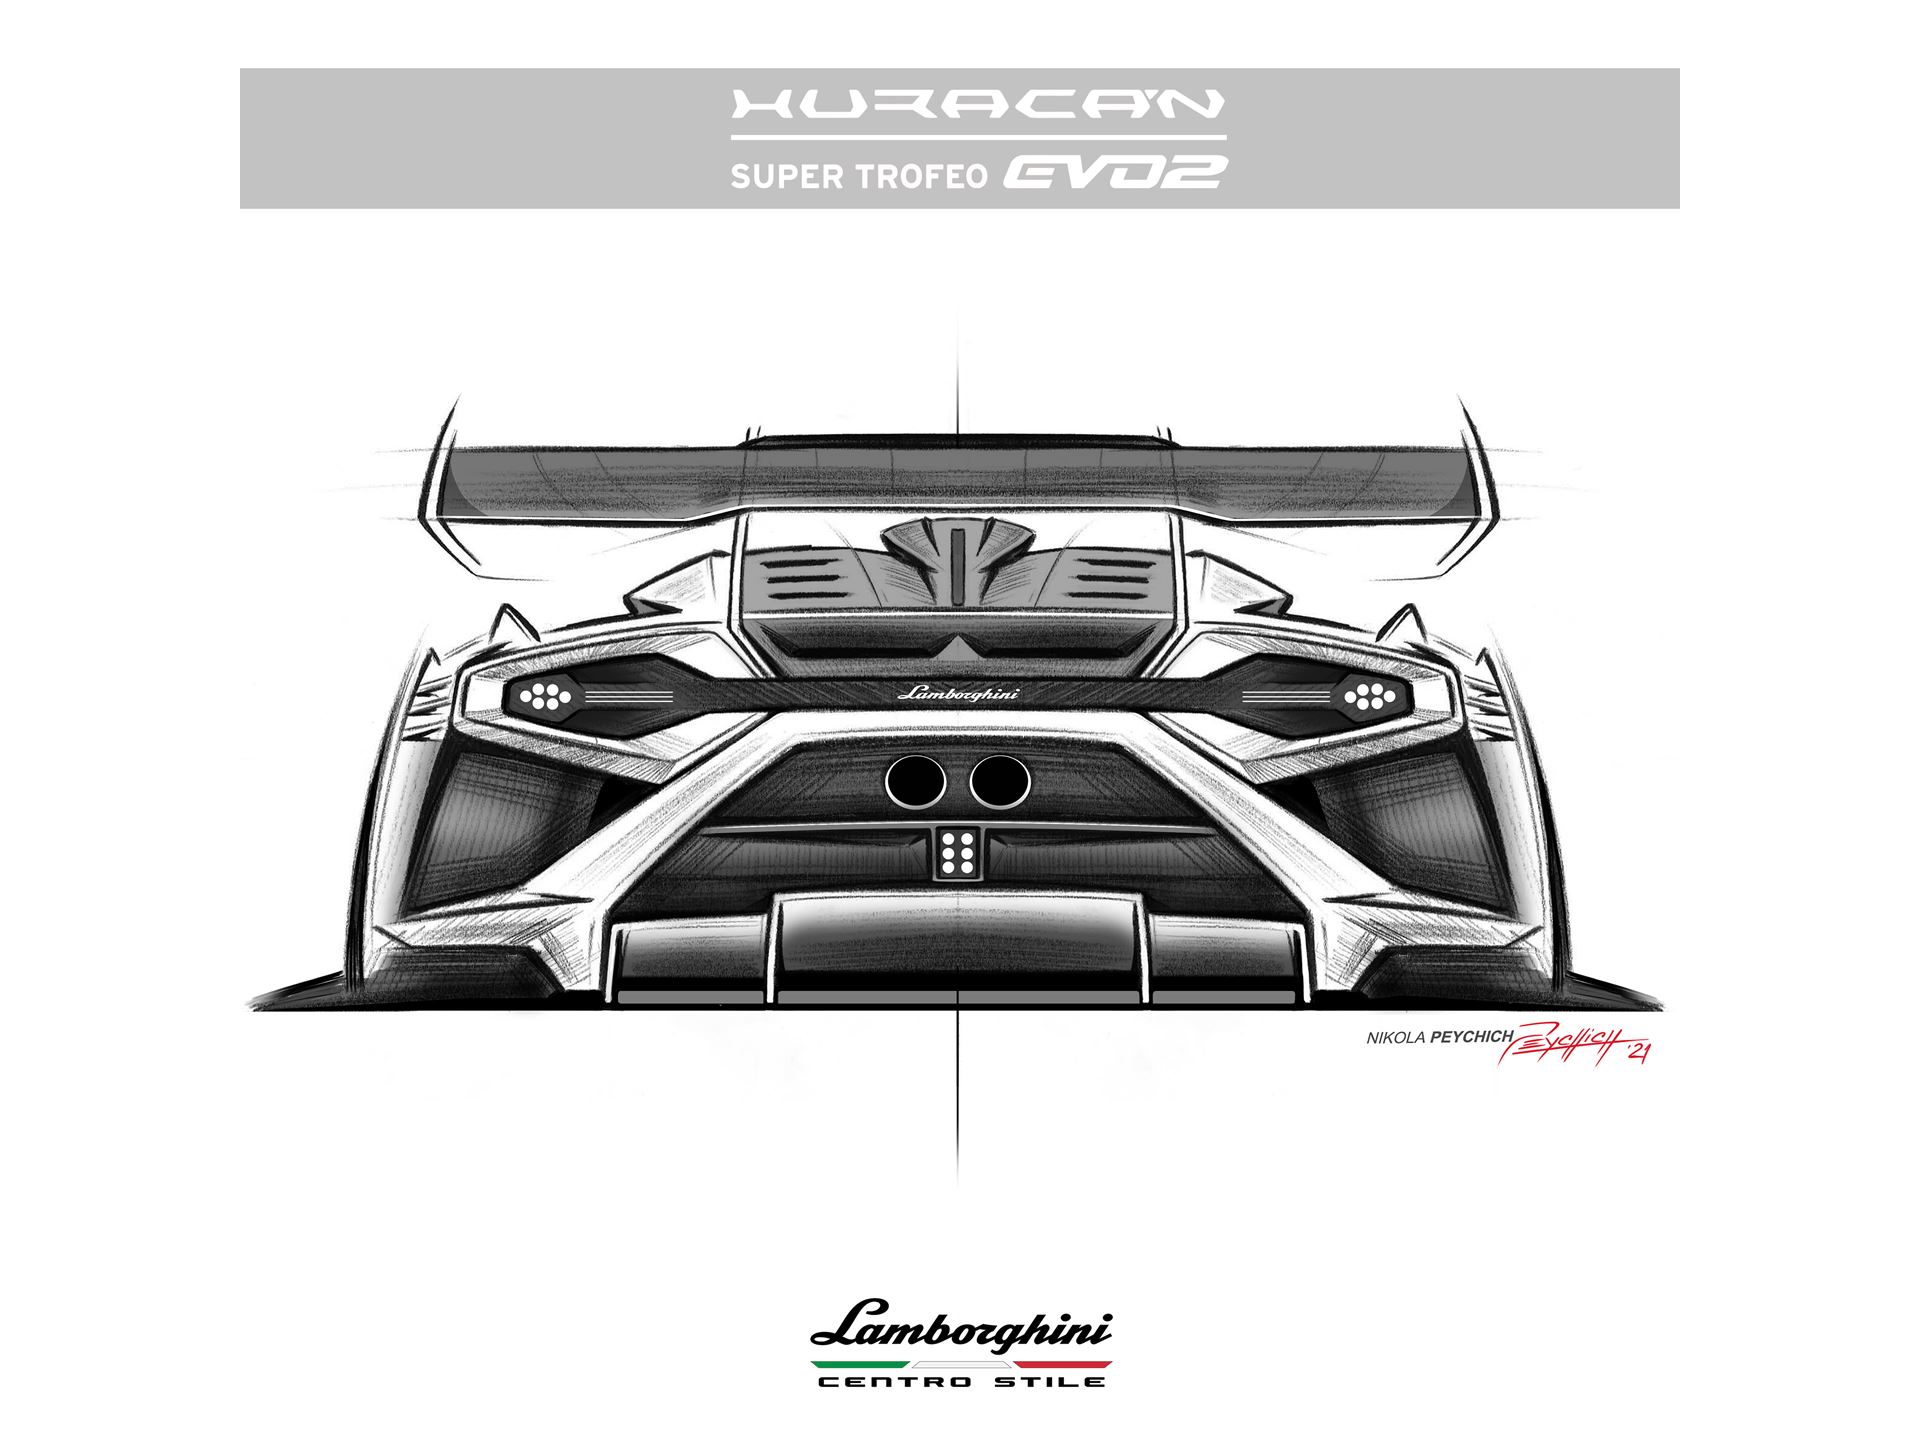 Lamborghini Huracán Super Trofeo EVO2 - Centro Stile - Sketches